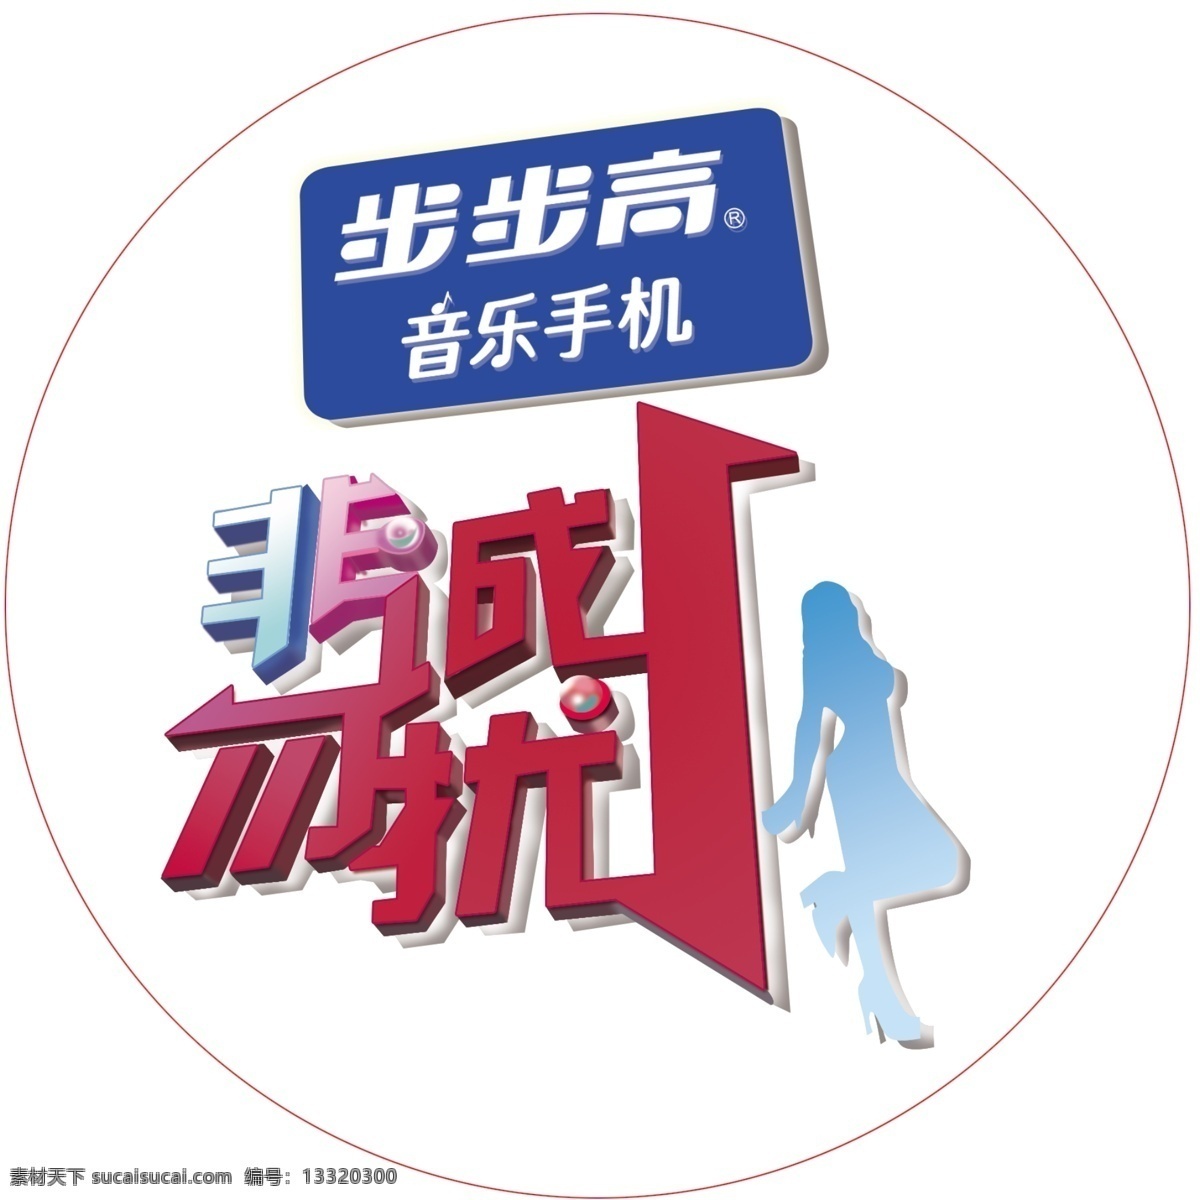 非诚勿扰标志 江苏卫视 非诚勿扰 logo 设计用 国内广告设计 广告设计模板 源文件